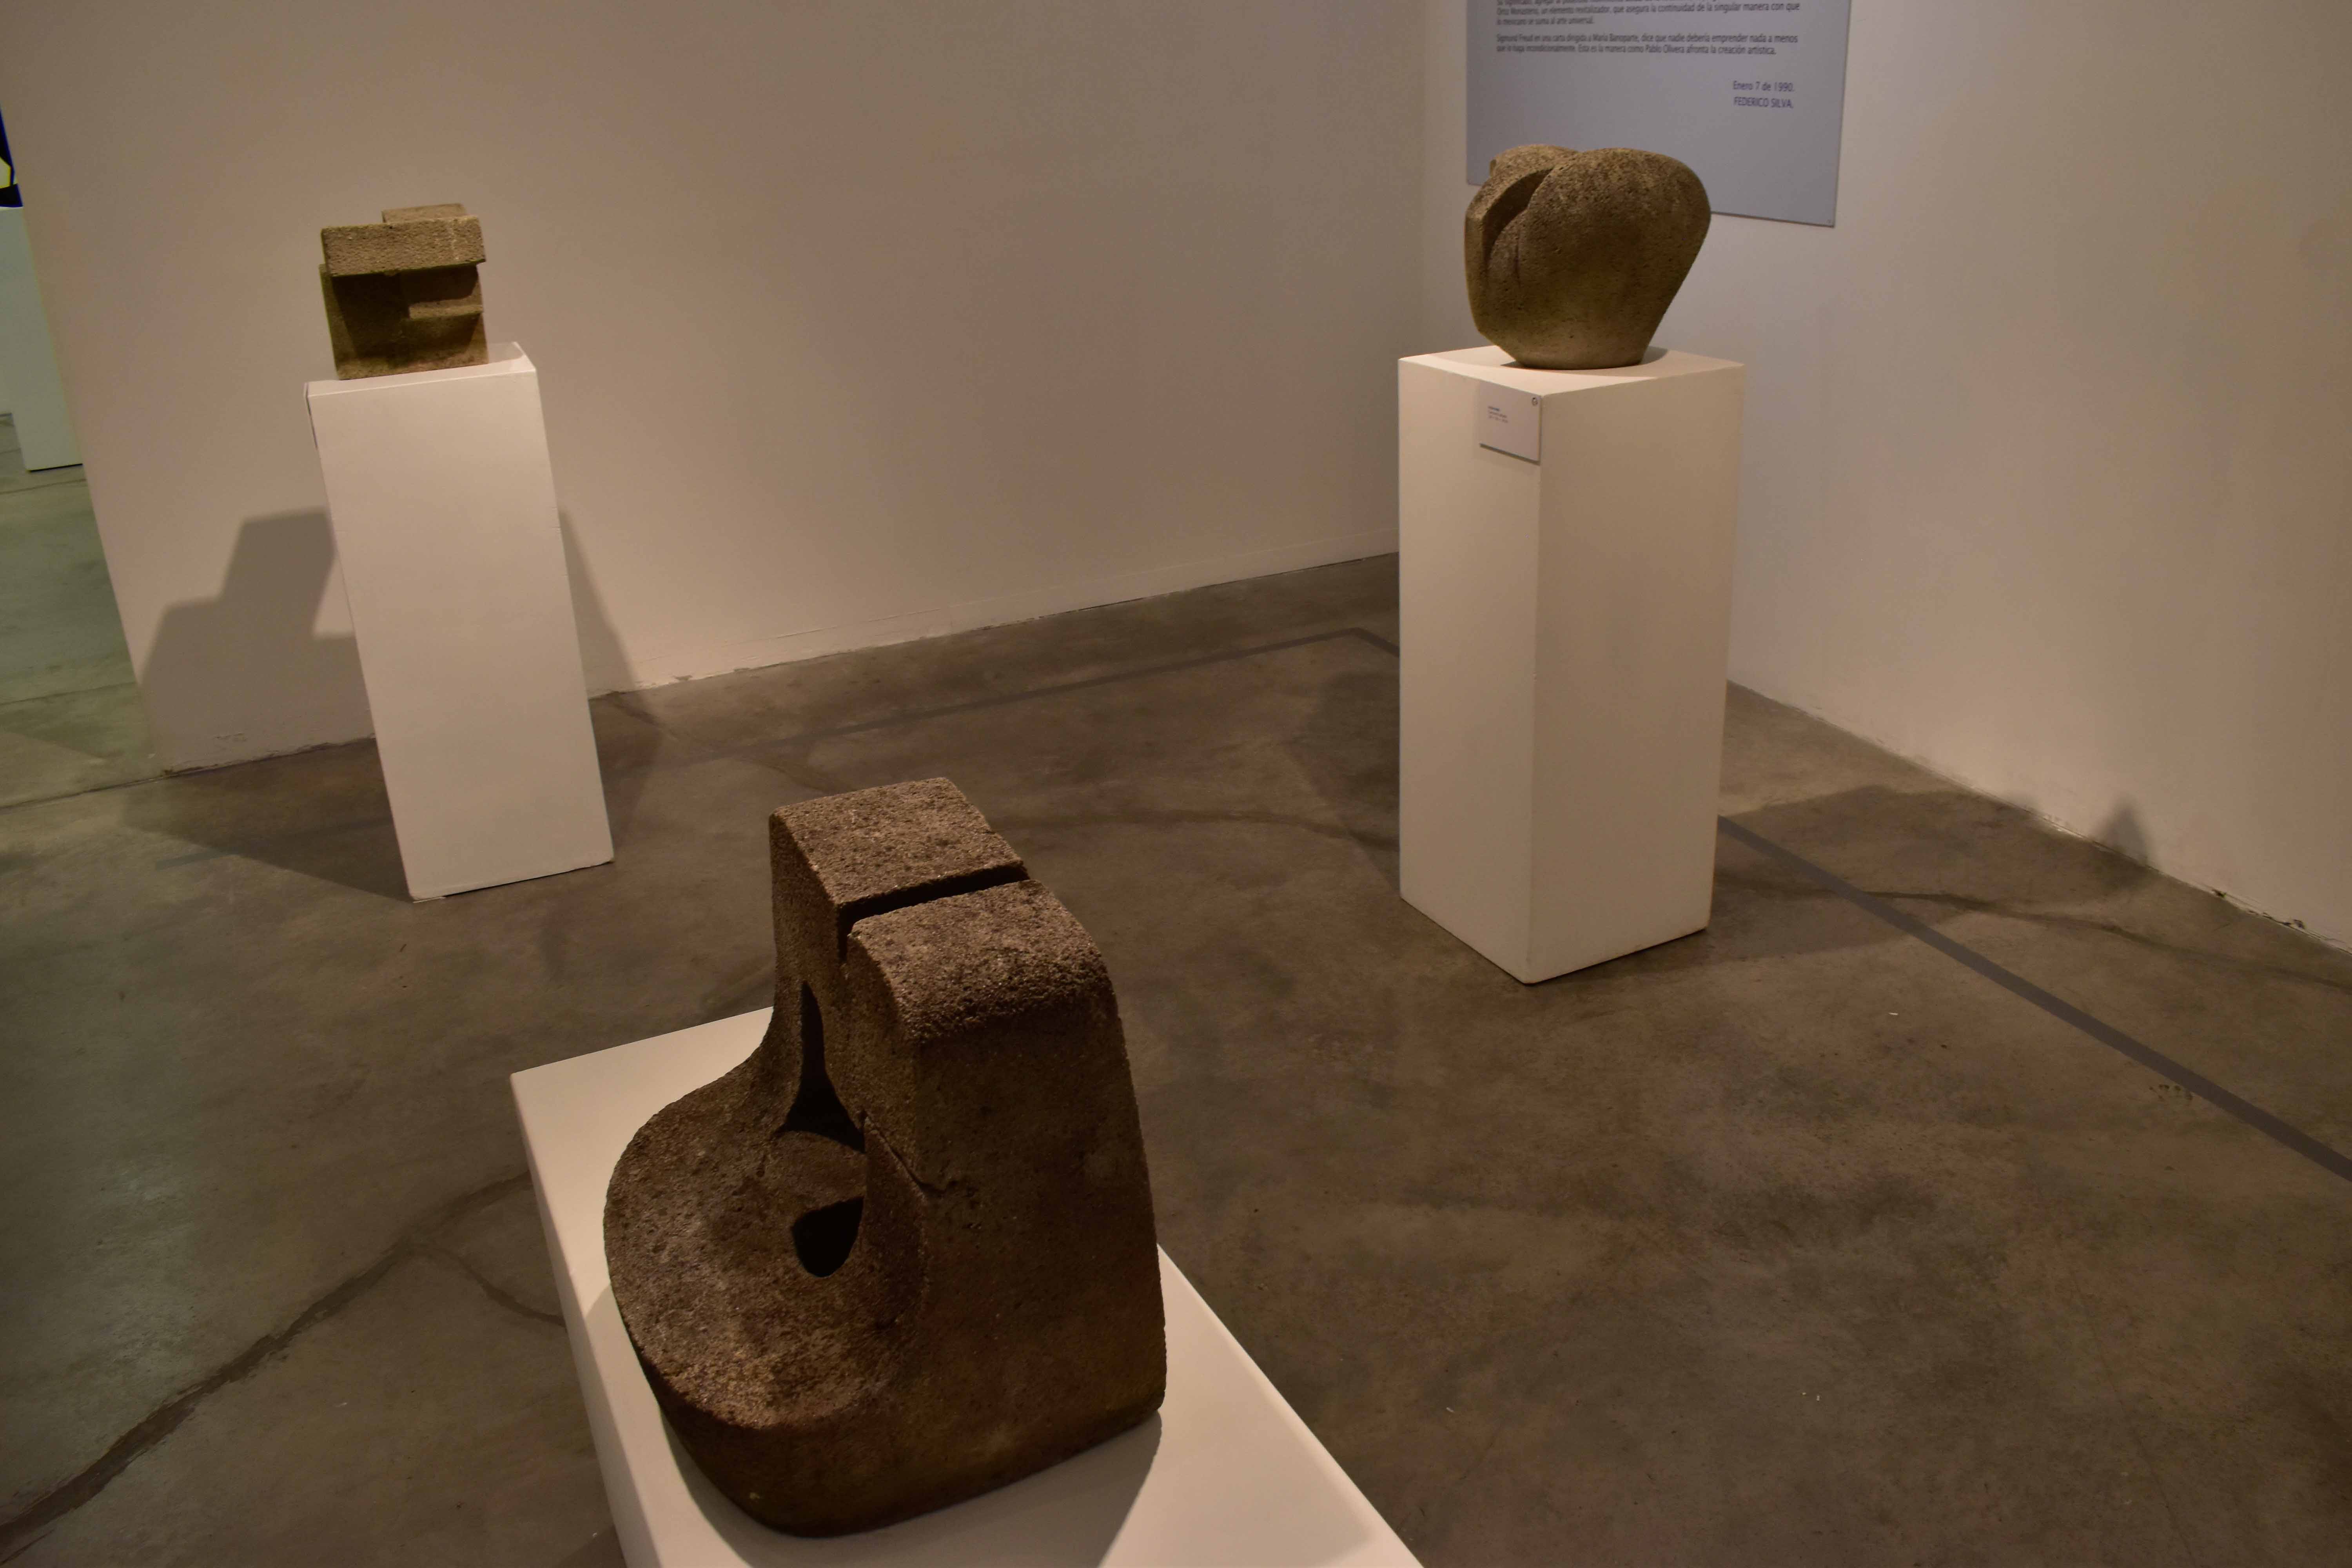 Galería CCU BUAP exhibe trabajo del escultor Pablo Olivera